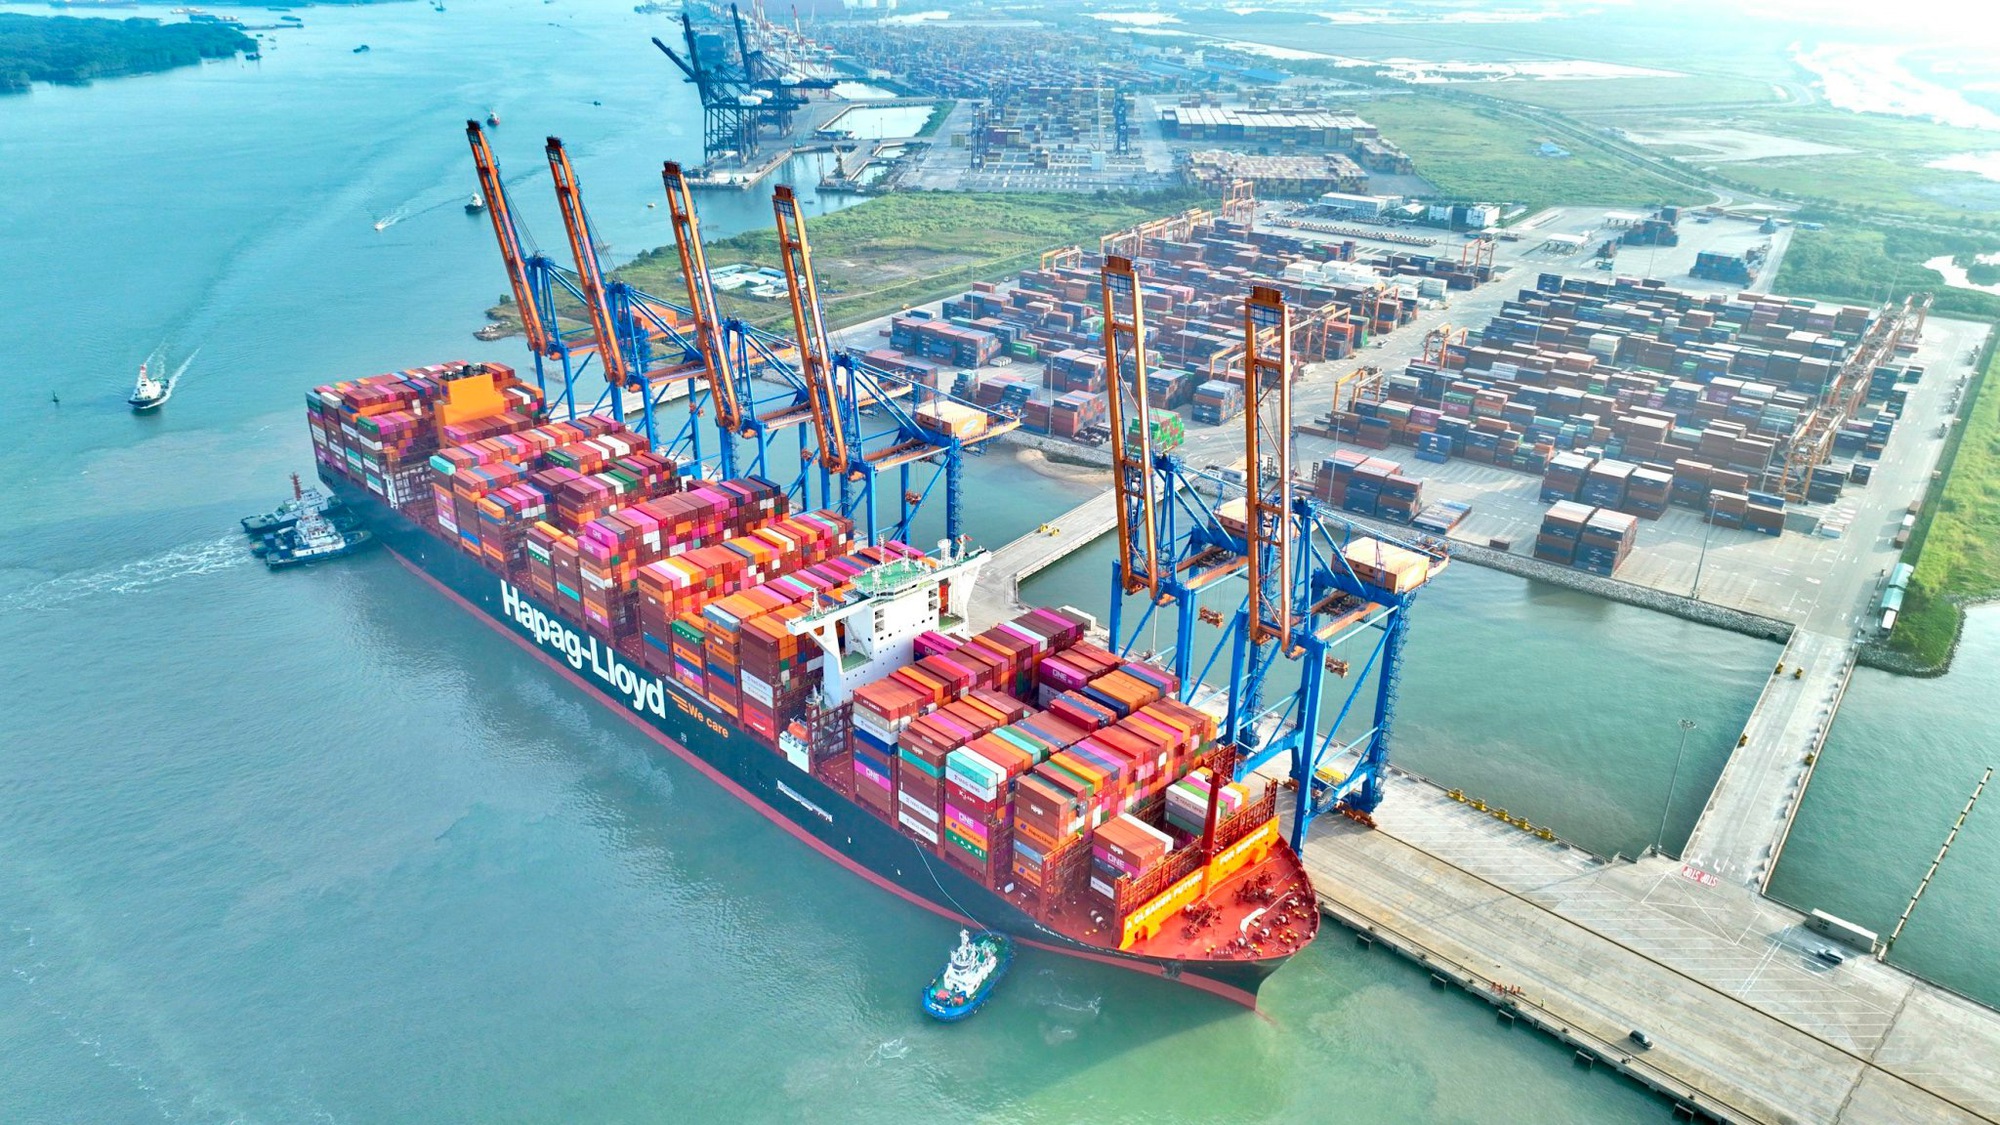 Thêm siêu tàu container vào cụm cảng Cái Mép - Thị Vải- Ảnh 2.